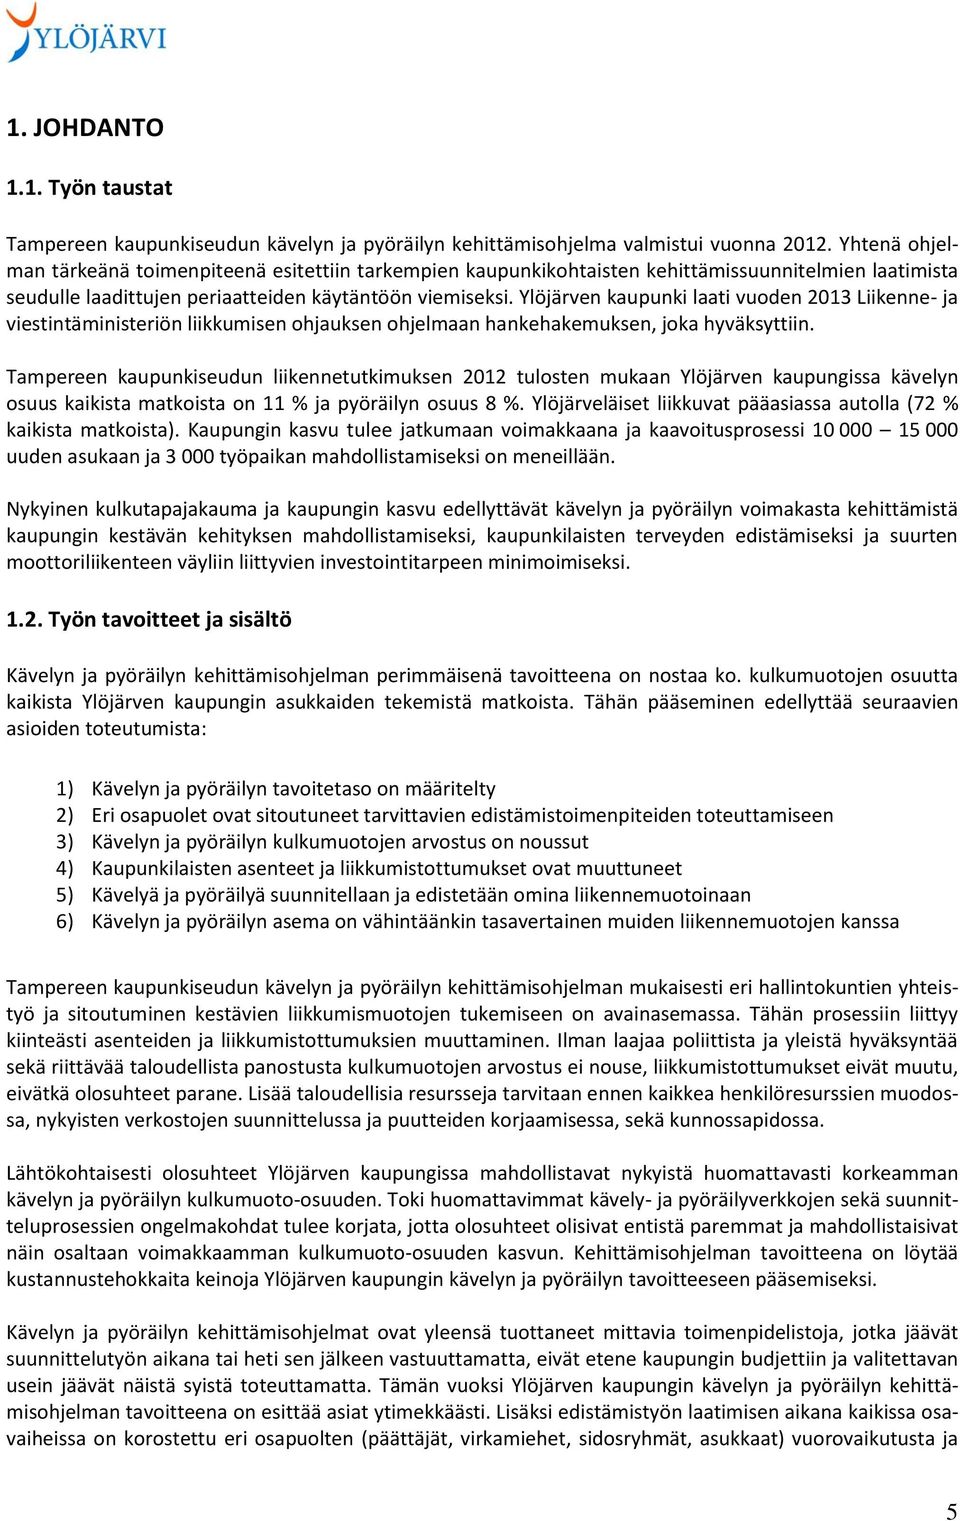 Ylöjärven kaupunki laati vuoden 2013 Liikenne- ja viestintäministeriön liikkumisen ohjauksen ohjelmaan hankehakemuksen, joka hyväksyttiin.